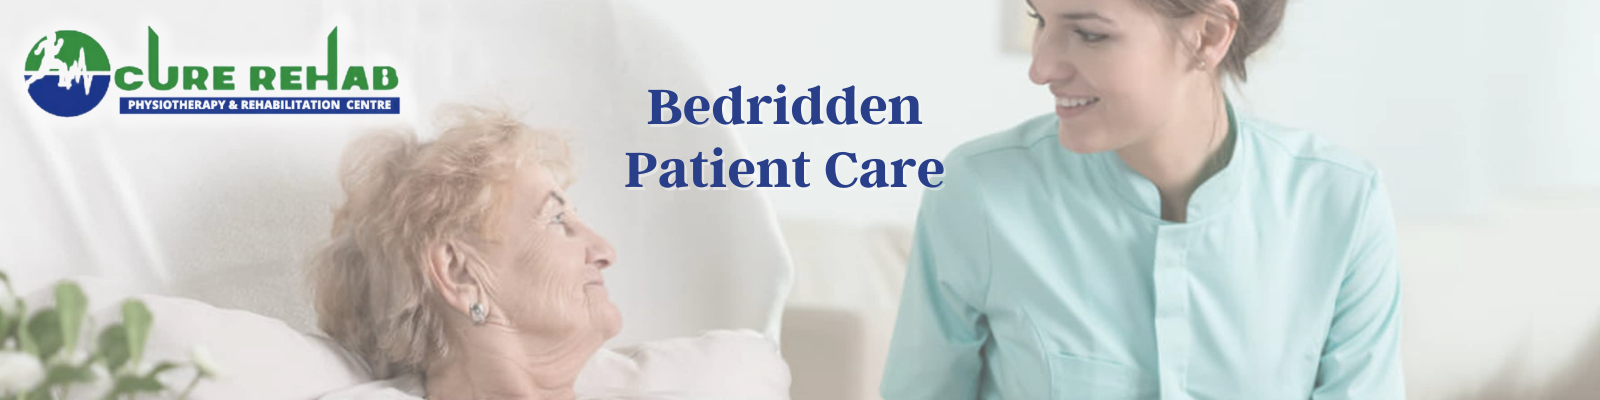 Bedridden Patient Care